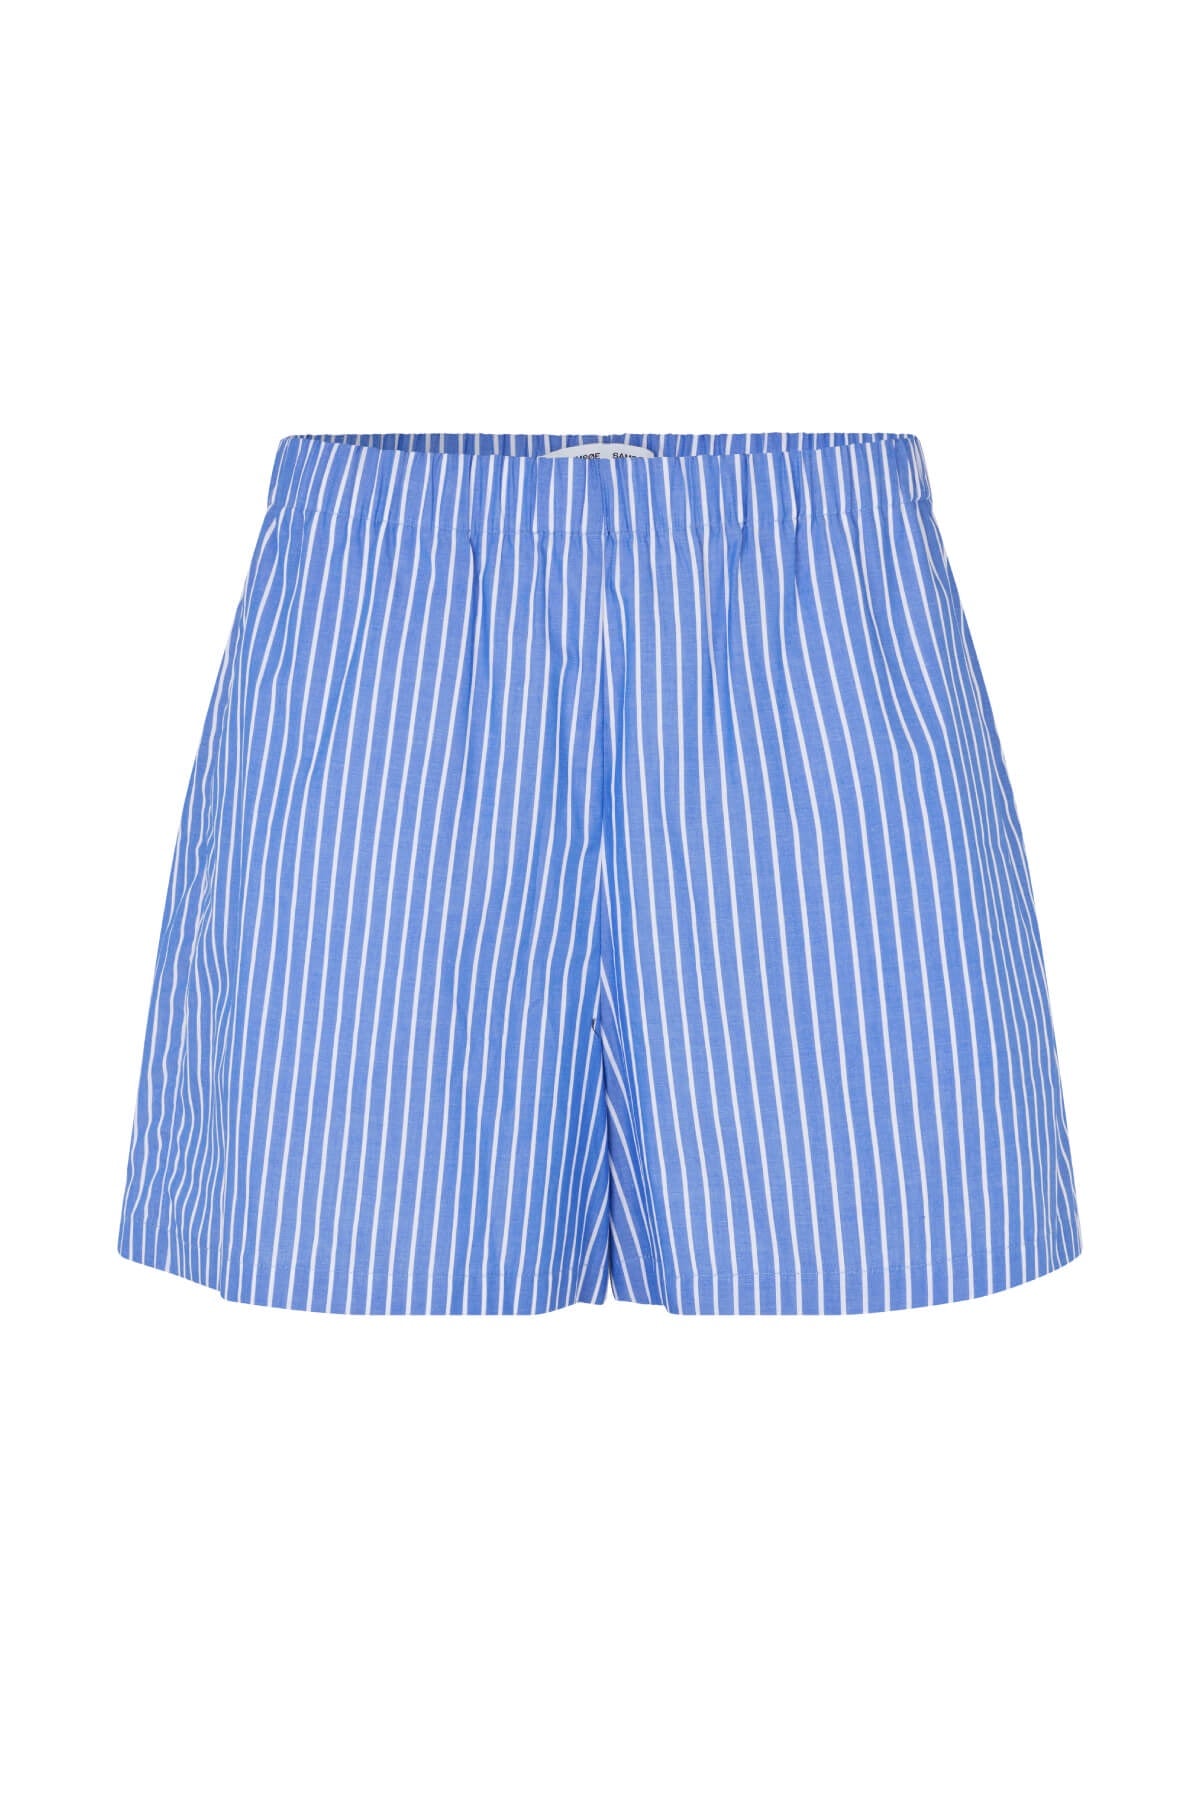 Samsøe Samsøe Maren Shorts - Blue/ White Stripe